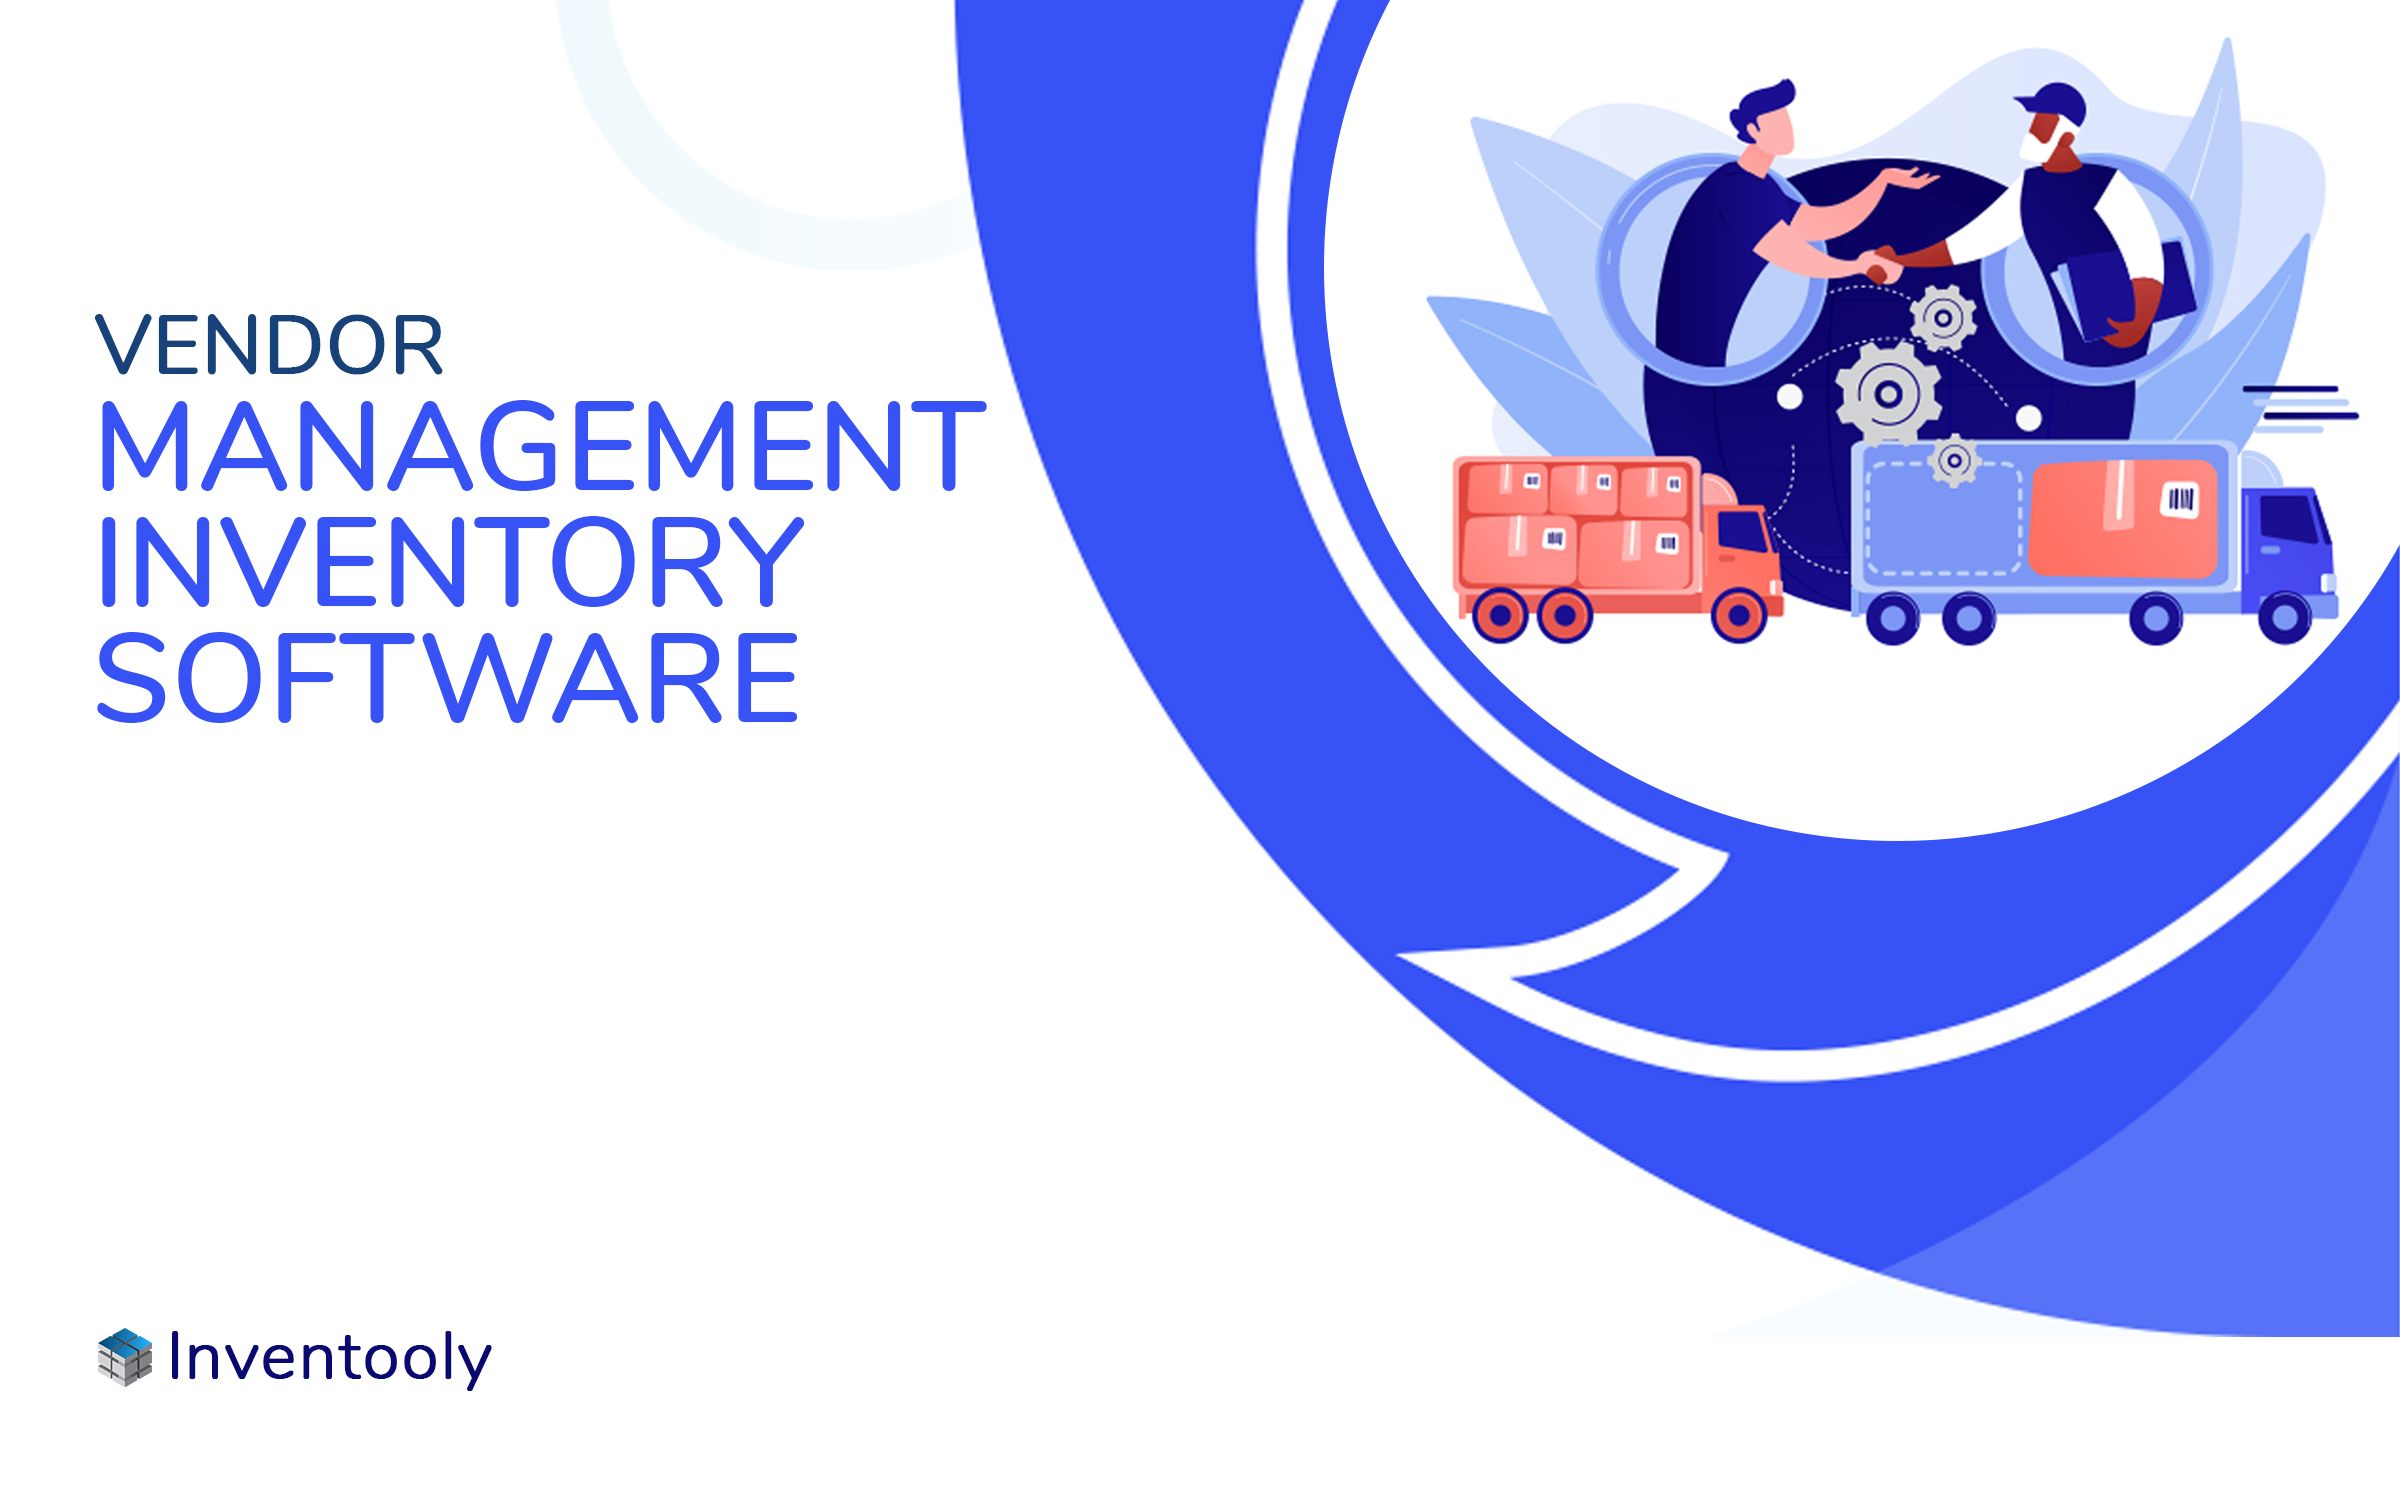 Vendor Management Inventory Software?